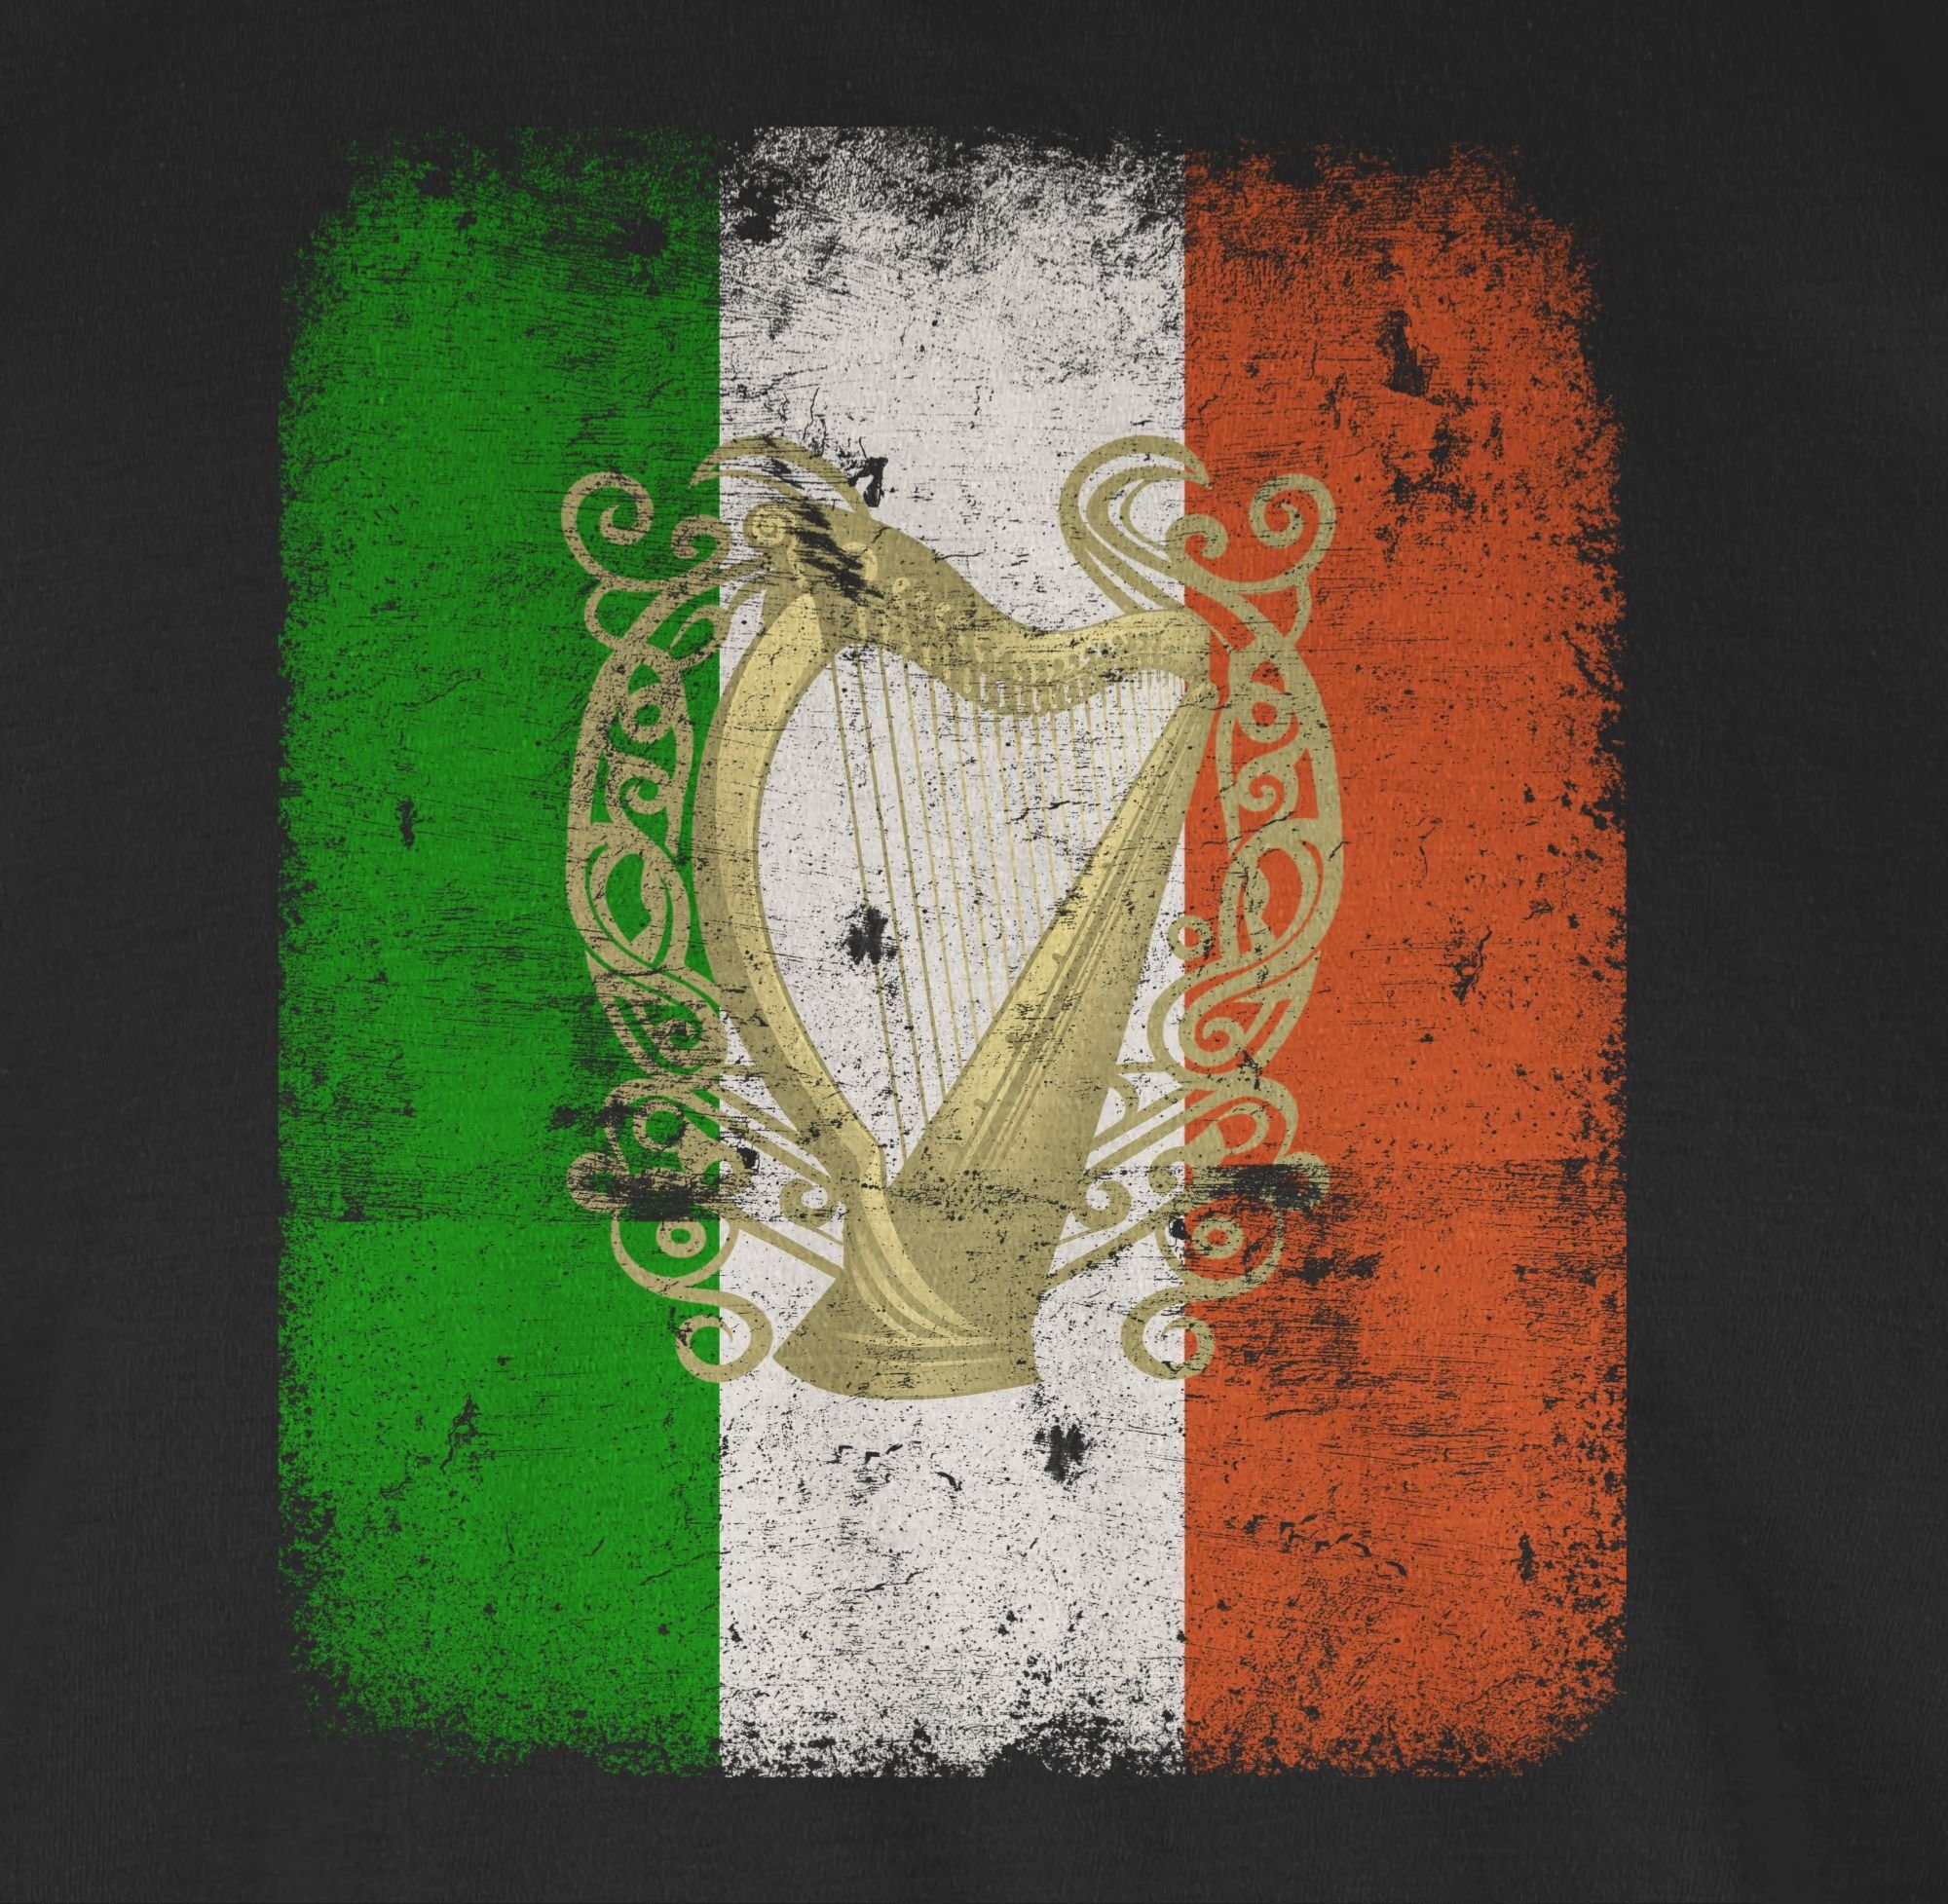 Shirtracer T-Shirt Irland Flagge Flag Irish Day St. Schwarz Patricks 01 Irische